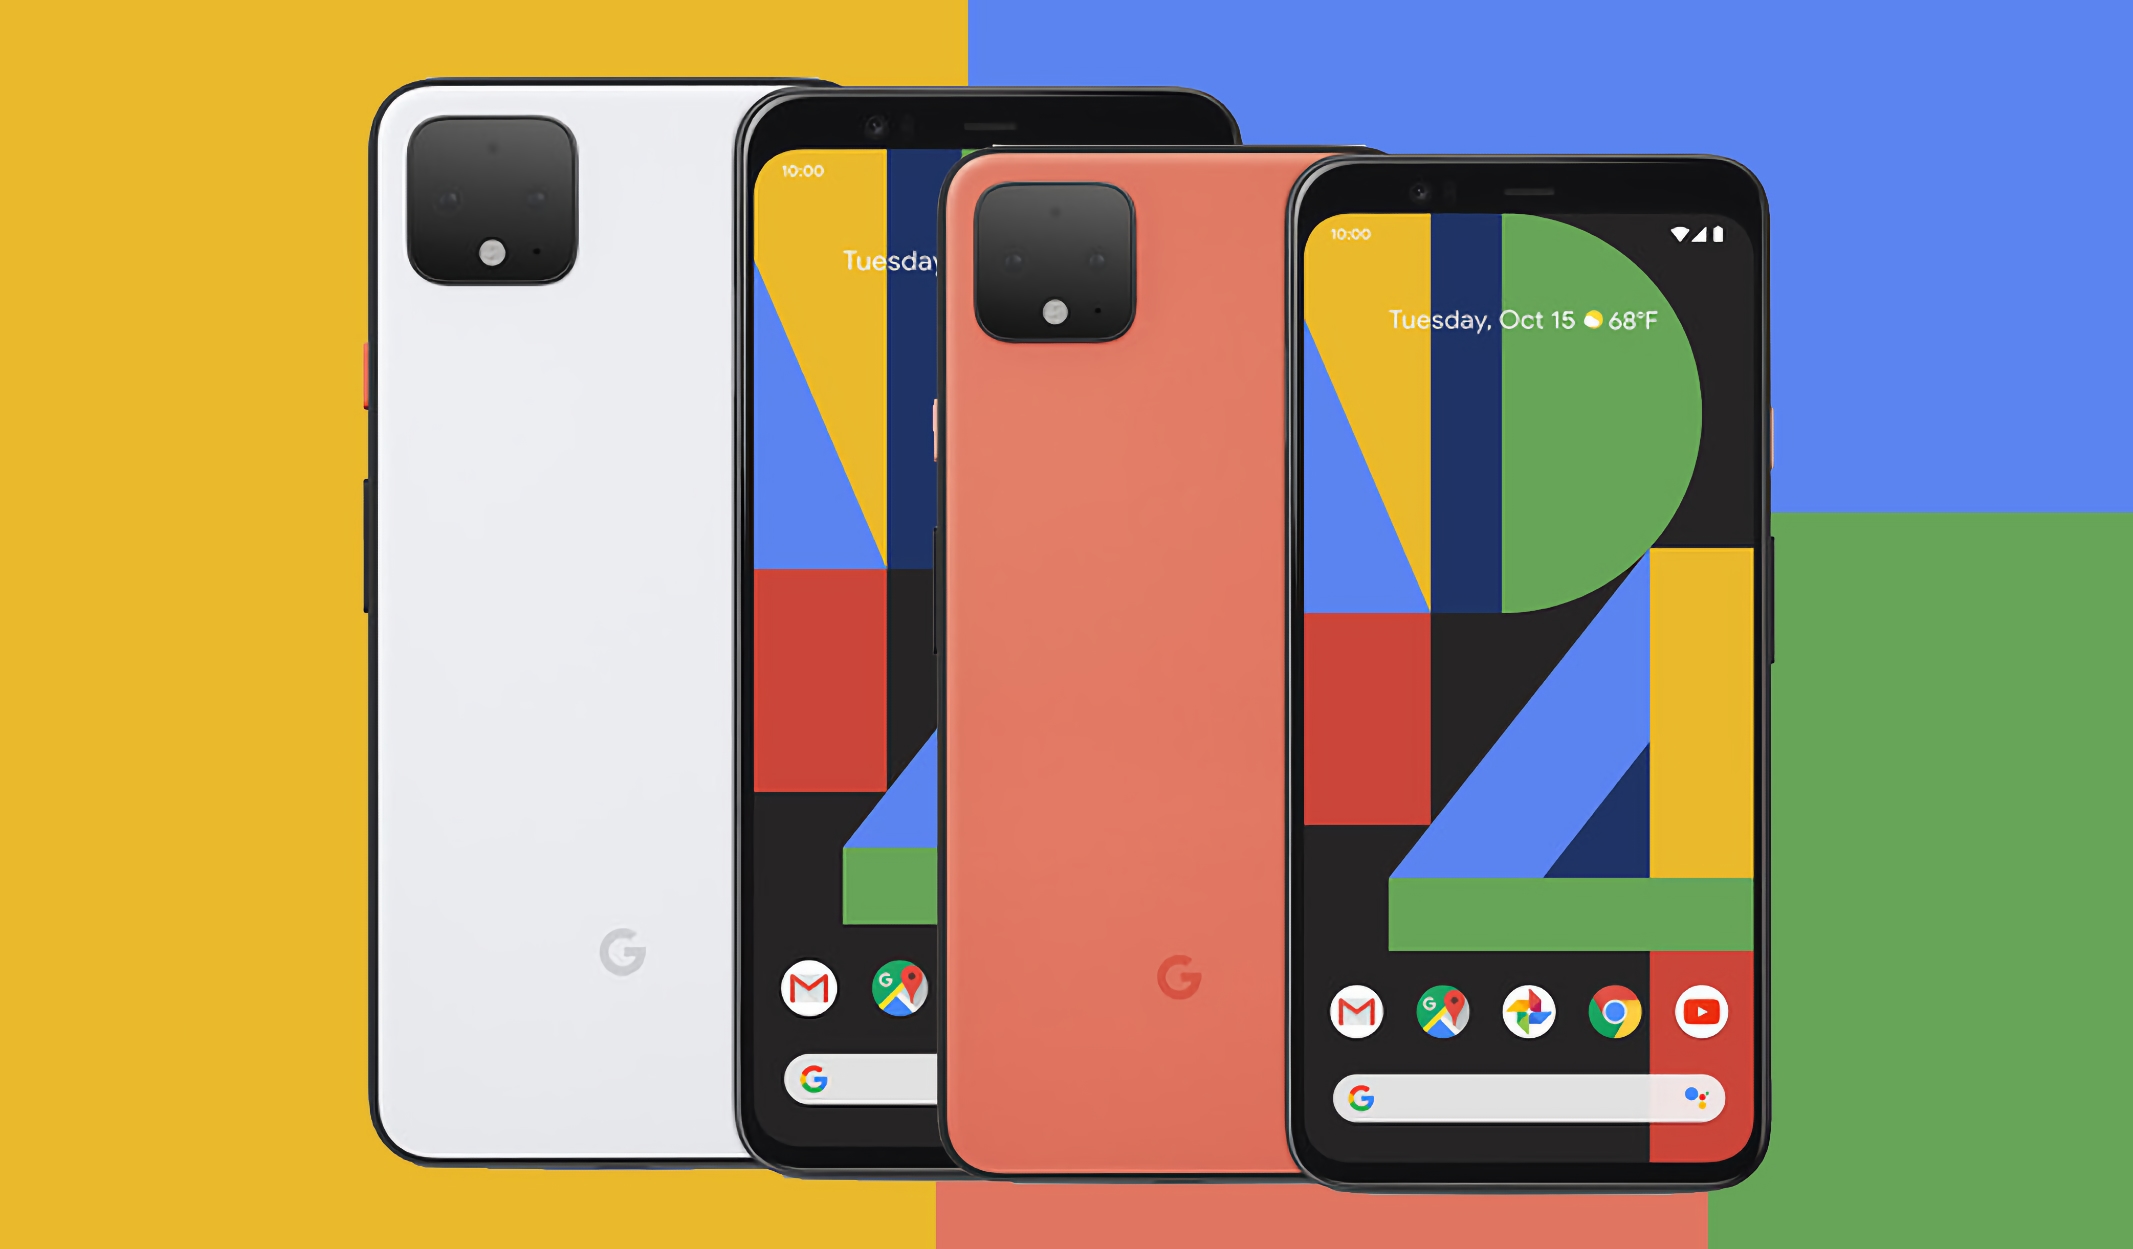 Prima dell'annuncio dei Pixel 7 e Pixel 7 Pro: Google ha rilasciato l'ultimo aggiornamento per i Pixel 4 e Pixel 4 XL